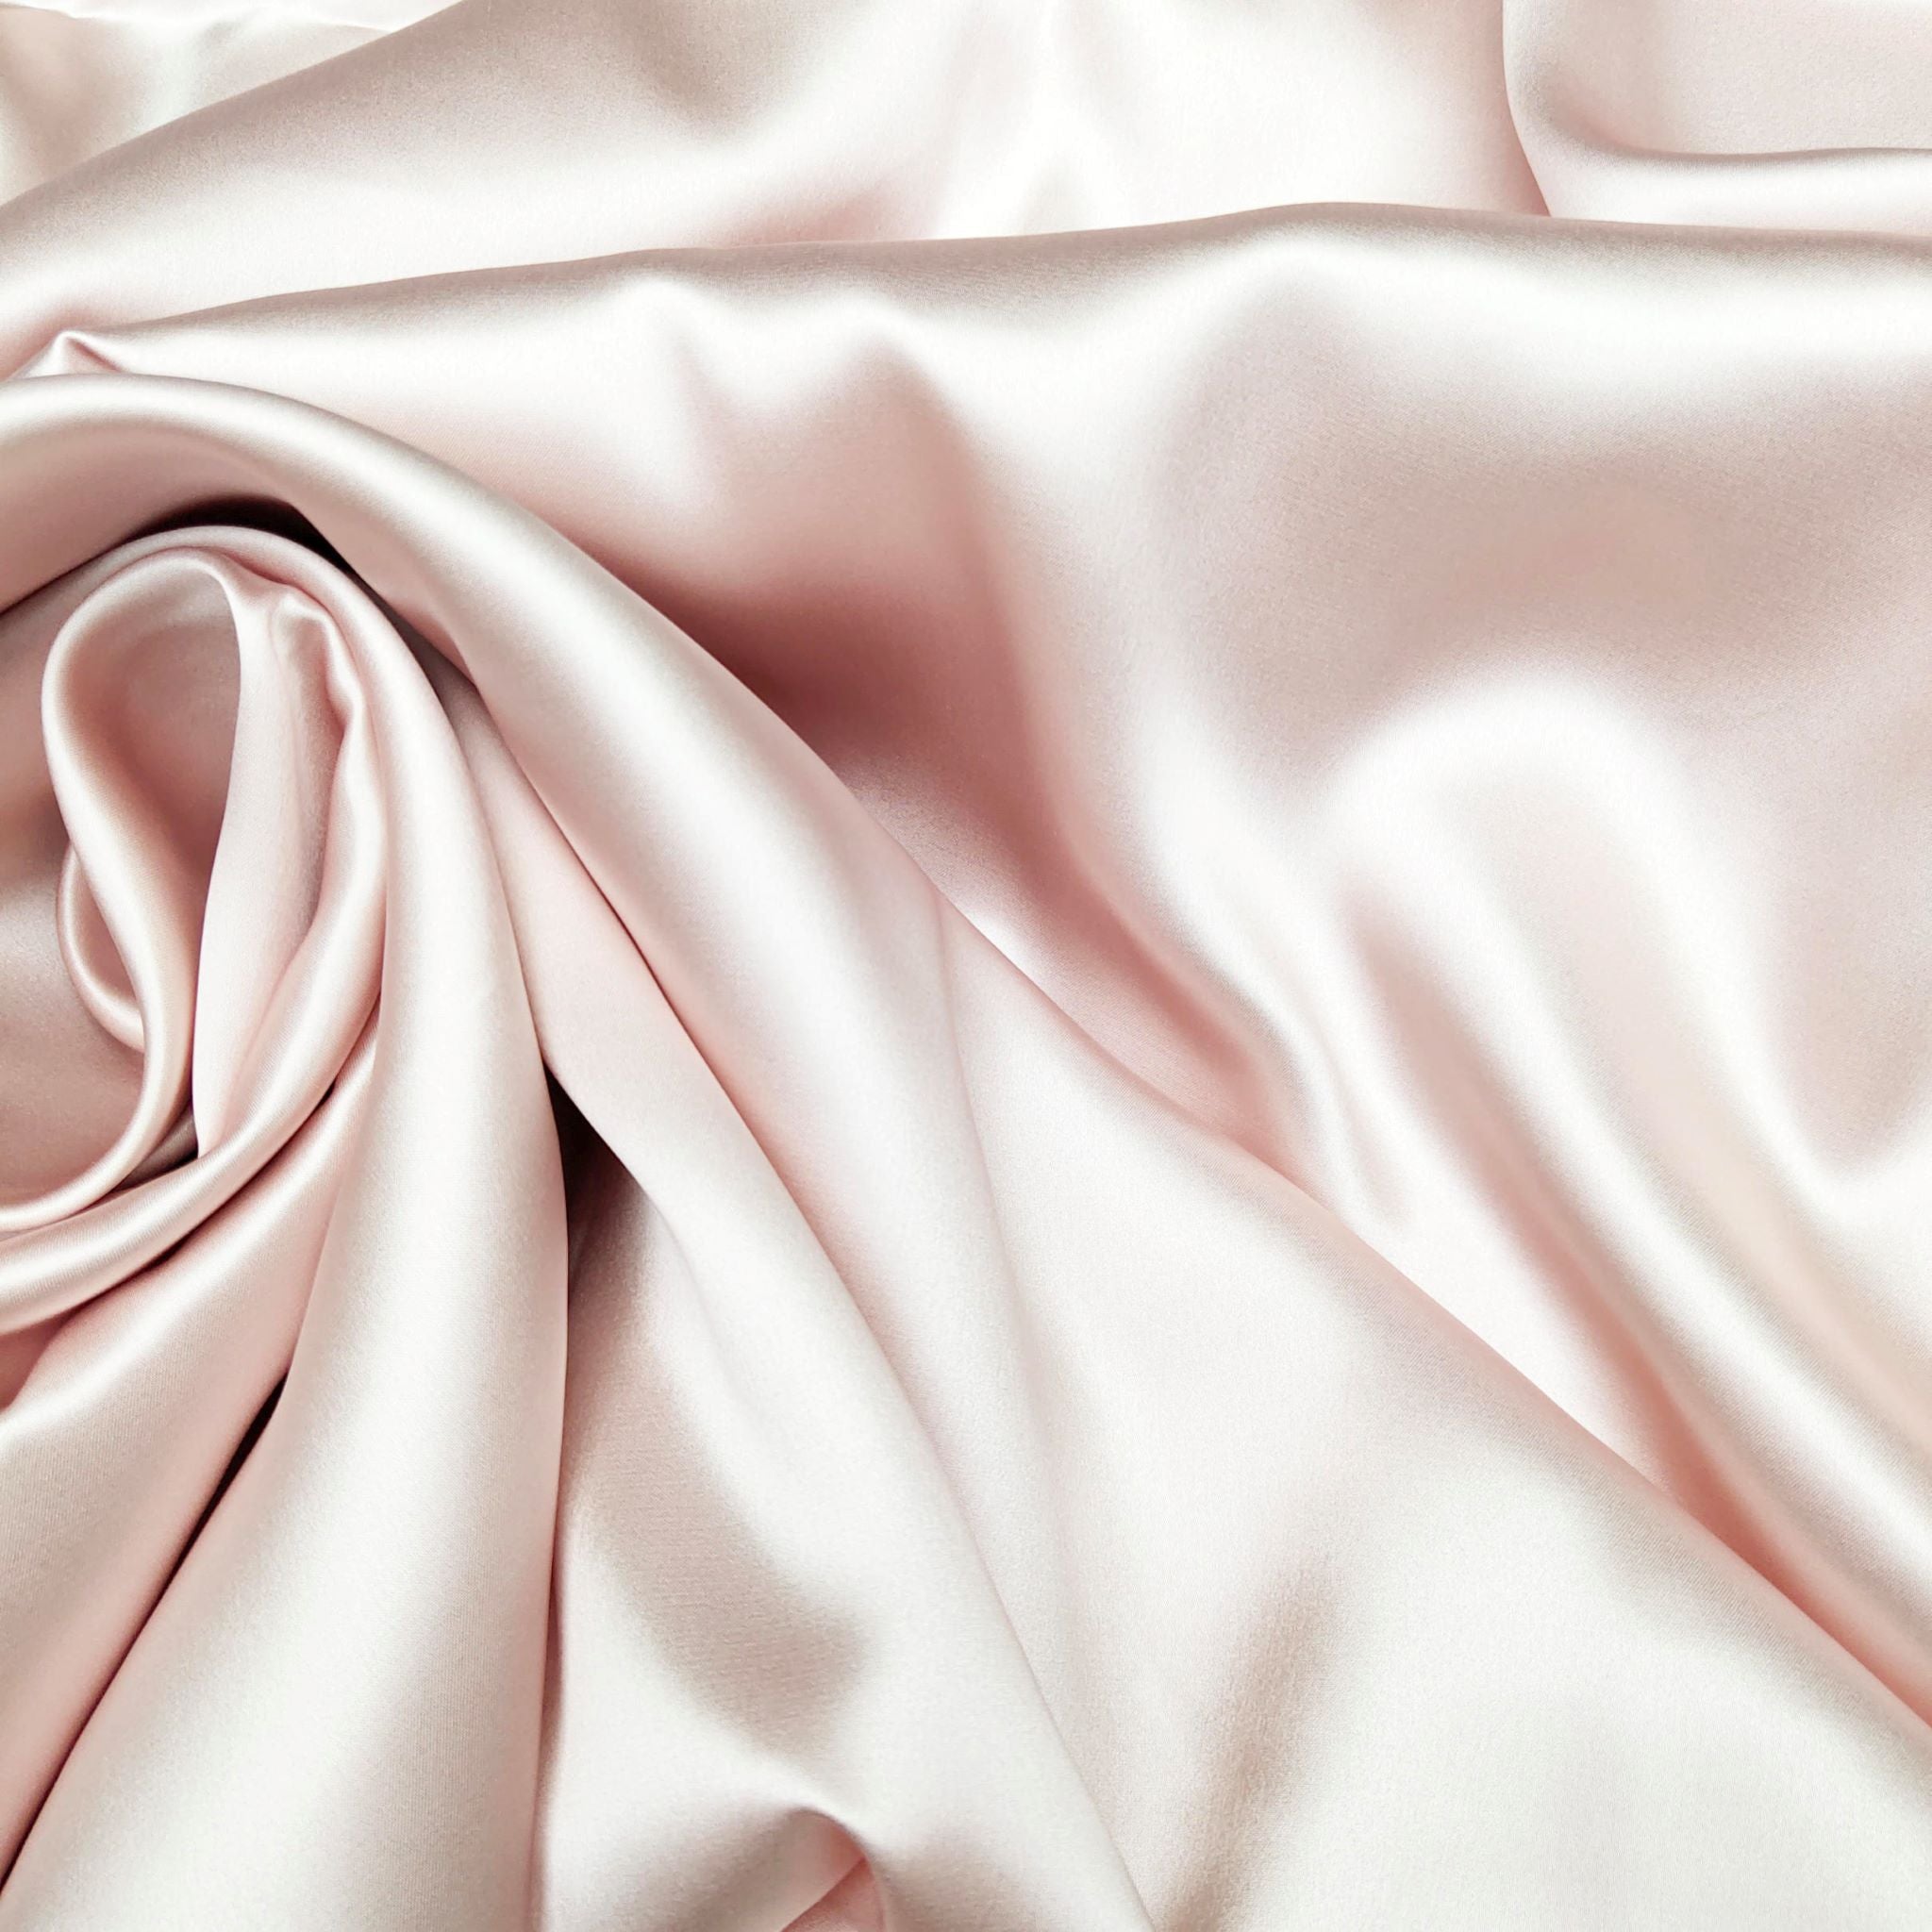 silk pillowcase - blush